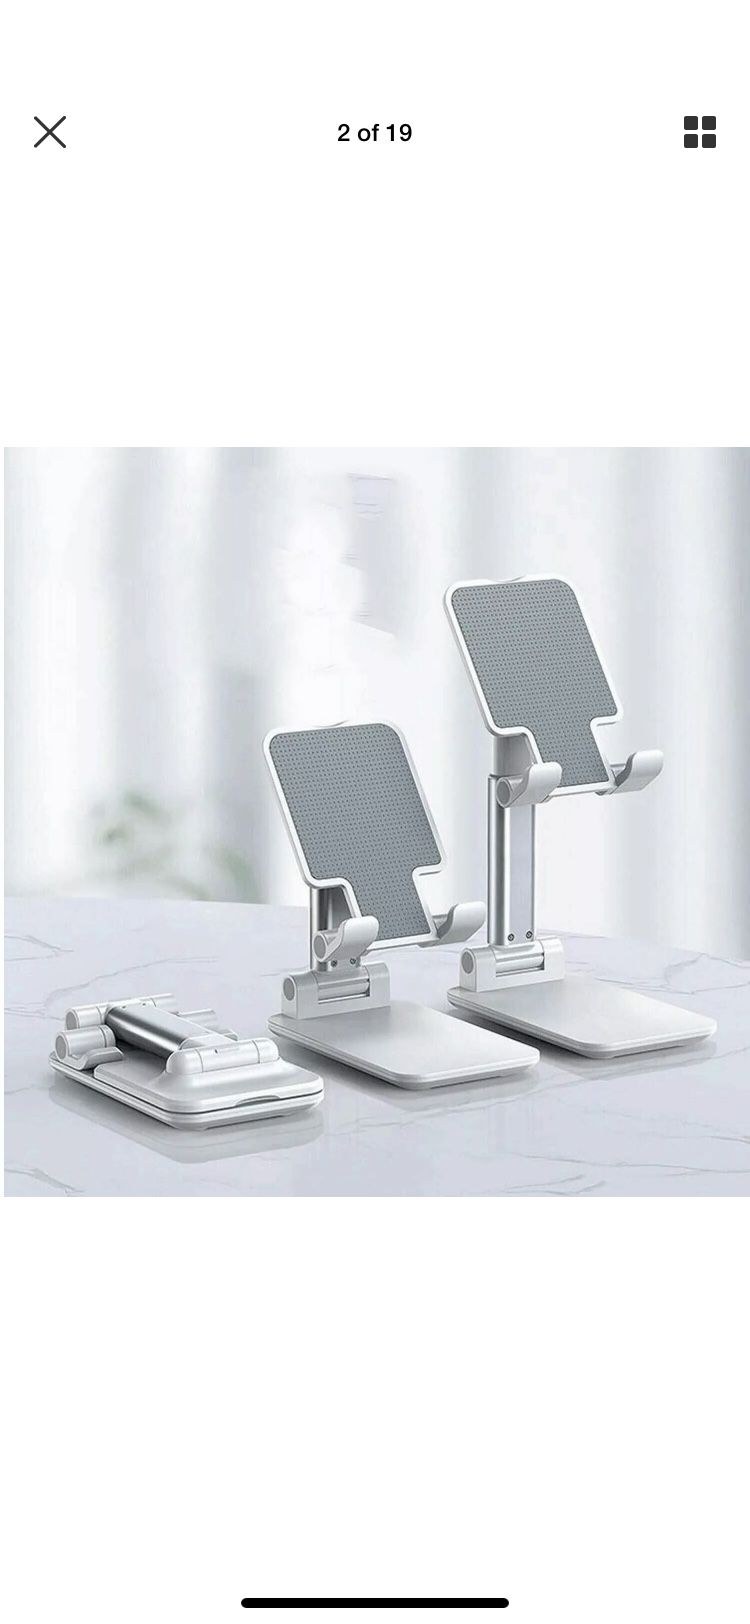 Foldable Adjustable Tablet Mobile Samsung iPad iPhone Desktop Holder Mount Stand